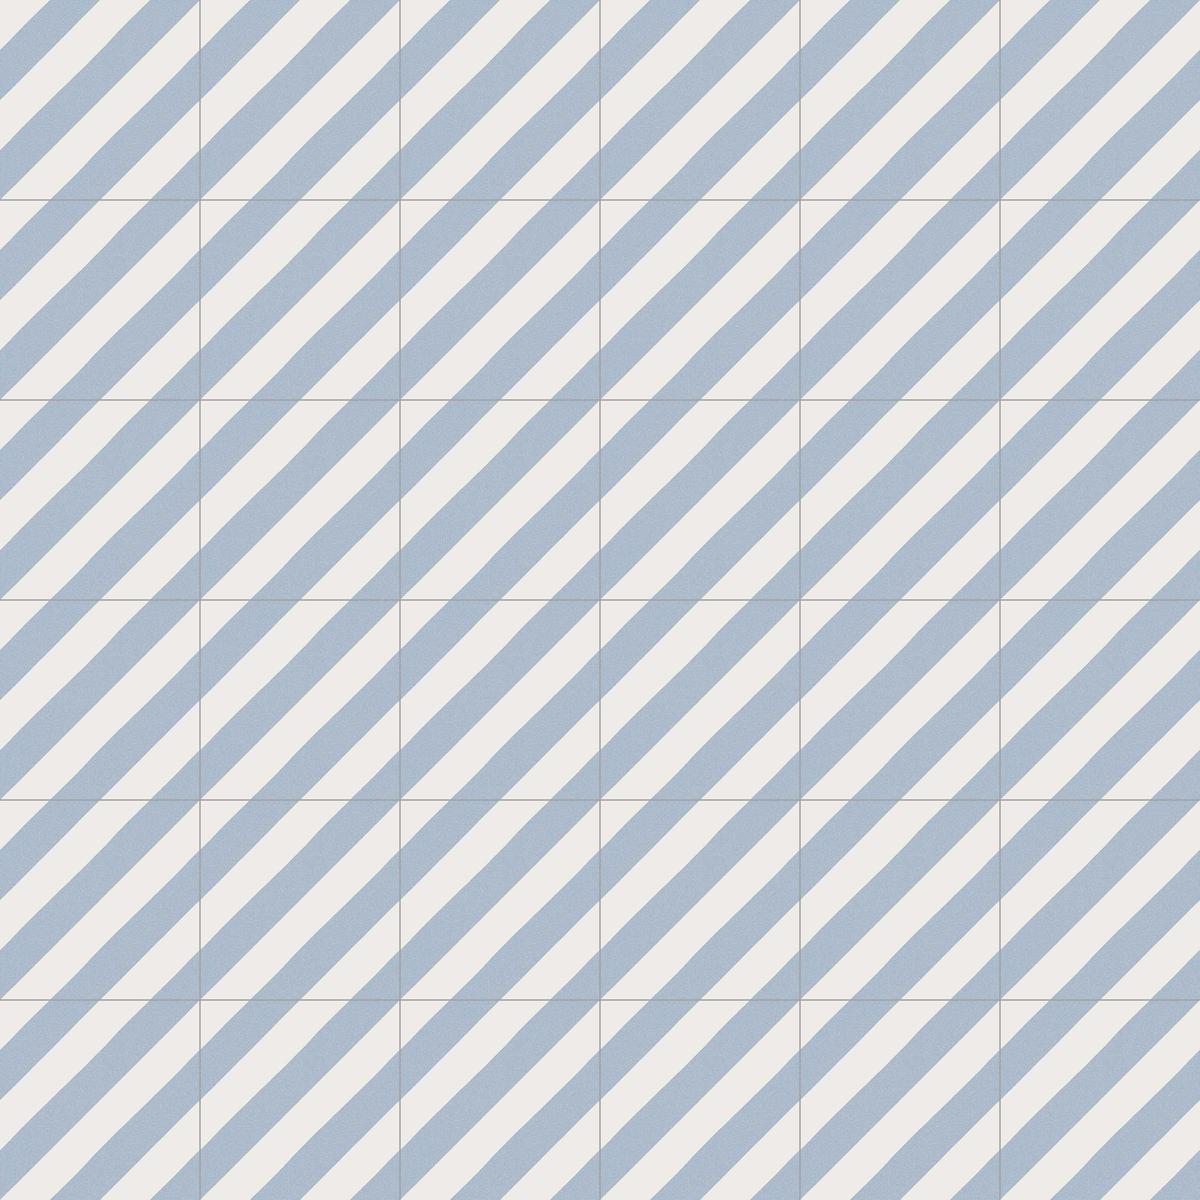 Carreau de ciment bleu clair à motifs diagonaux blancs 20x20 cm